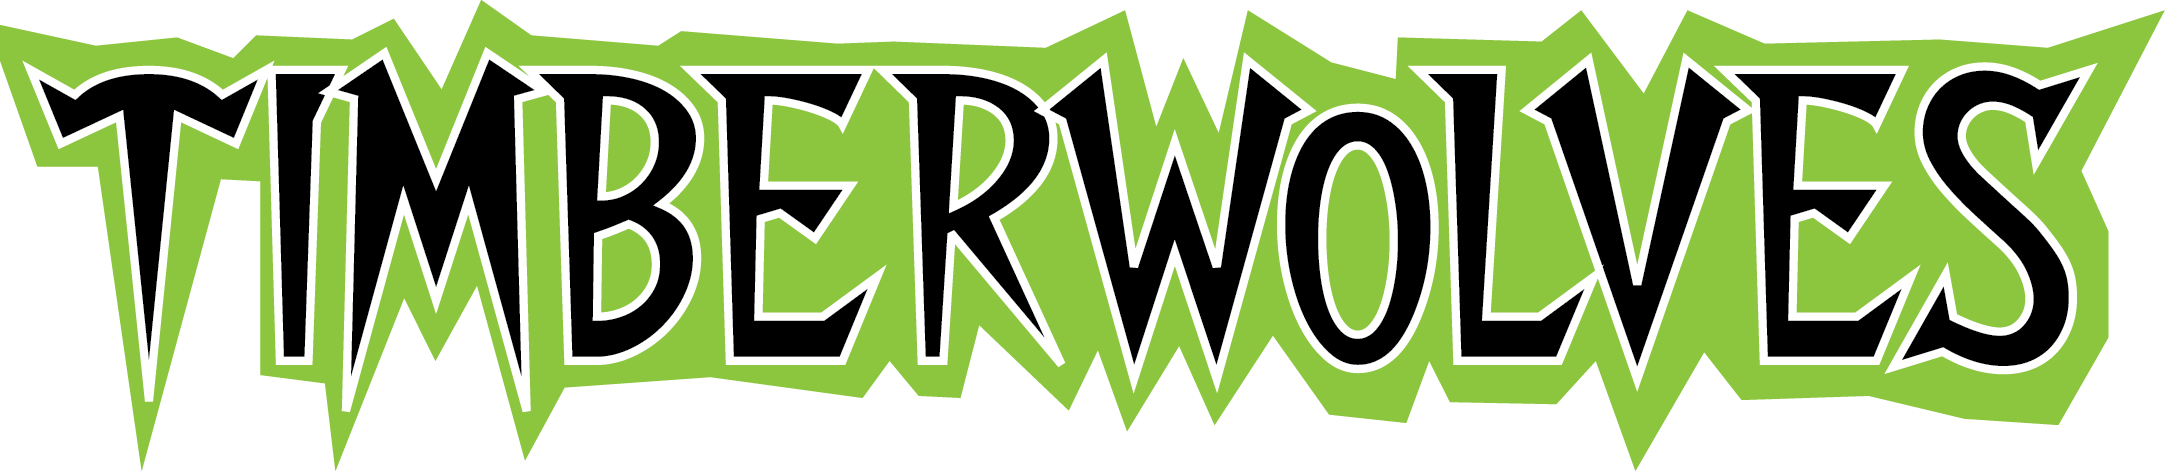 Timberwolves Baseball Logos (2165x471), Png Download